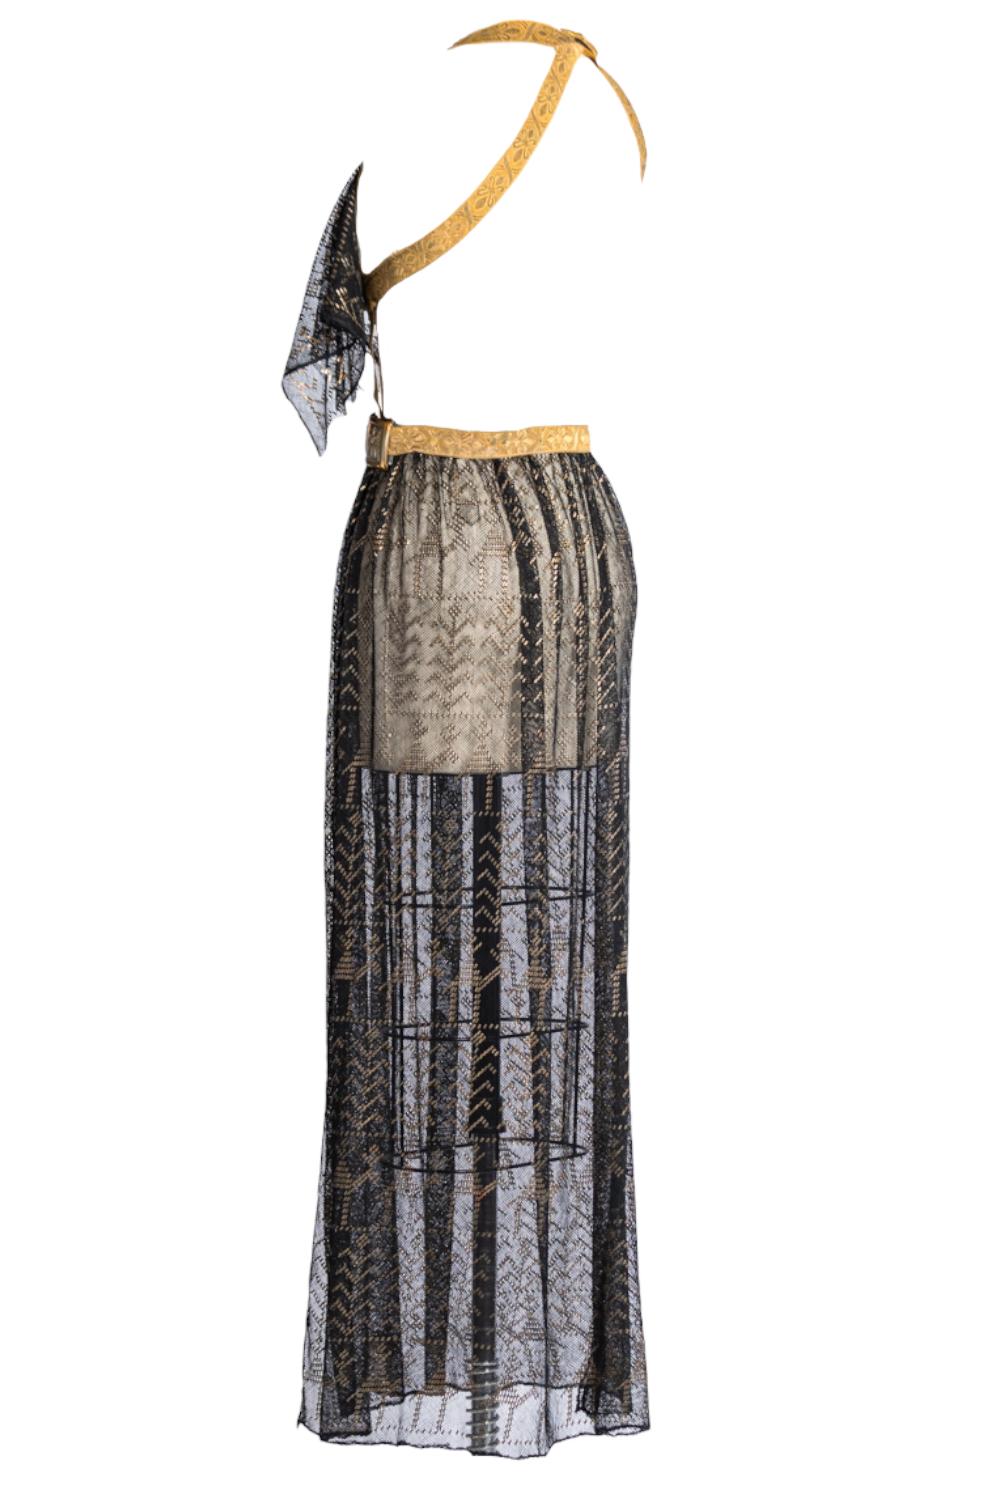 MORPHEW ATELIER Black & Gold Cotton Net Antique Egyptian Assuit Gown With Milit For Sale 1